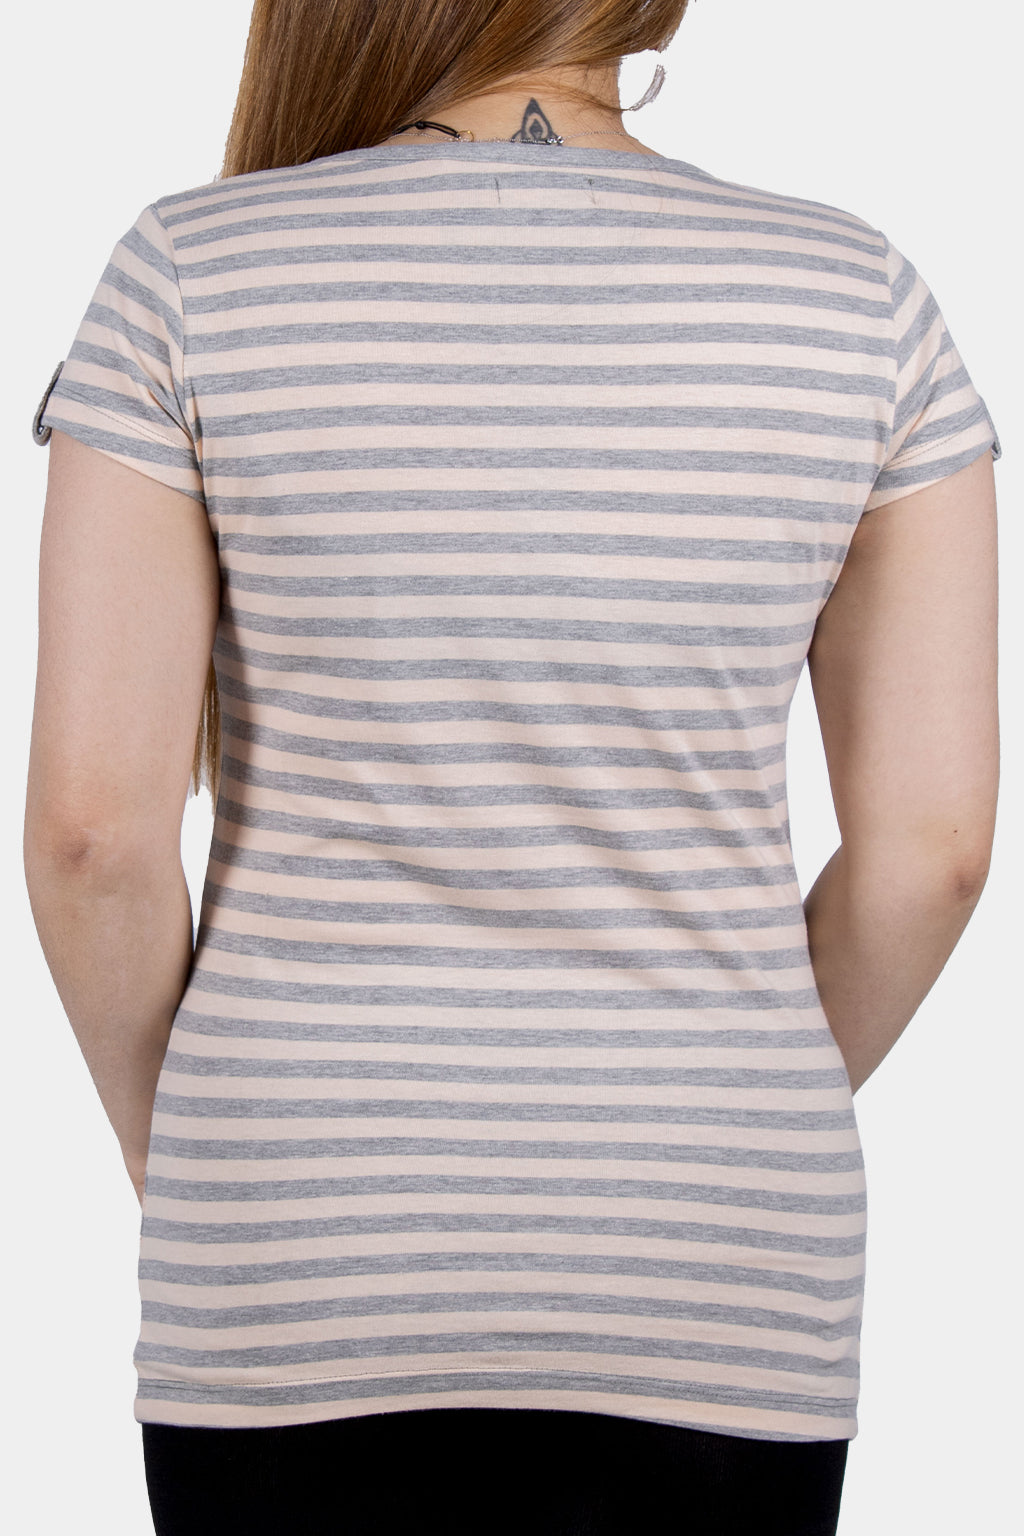 Bianco Nero - Women's V-neck Shirt Stripe Pattern